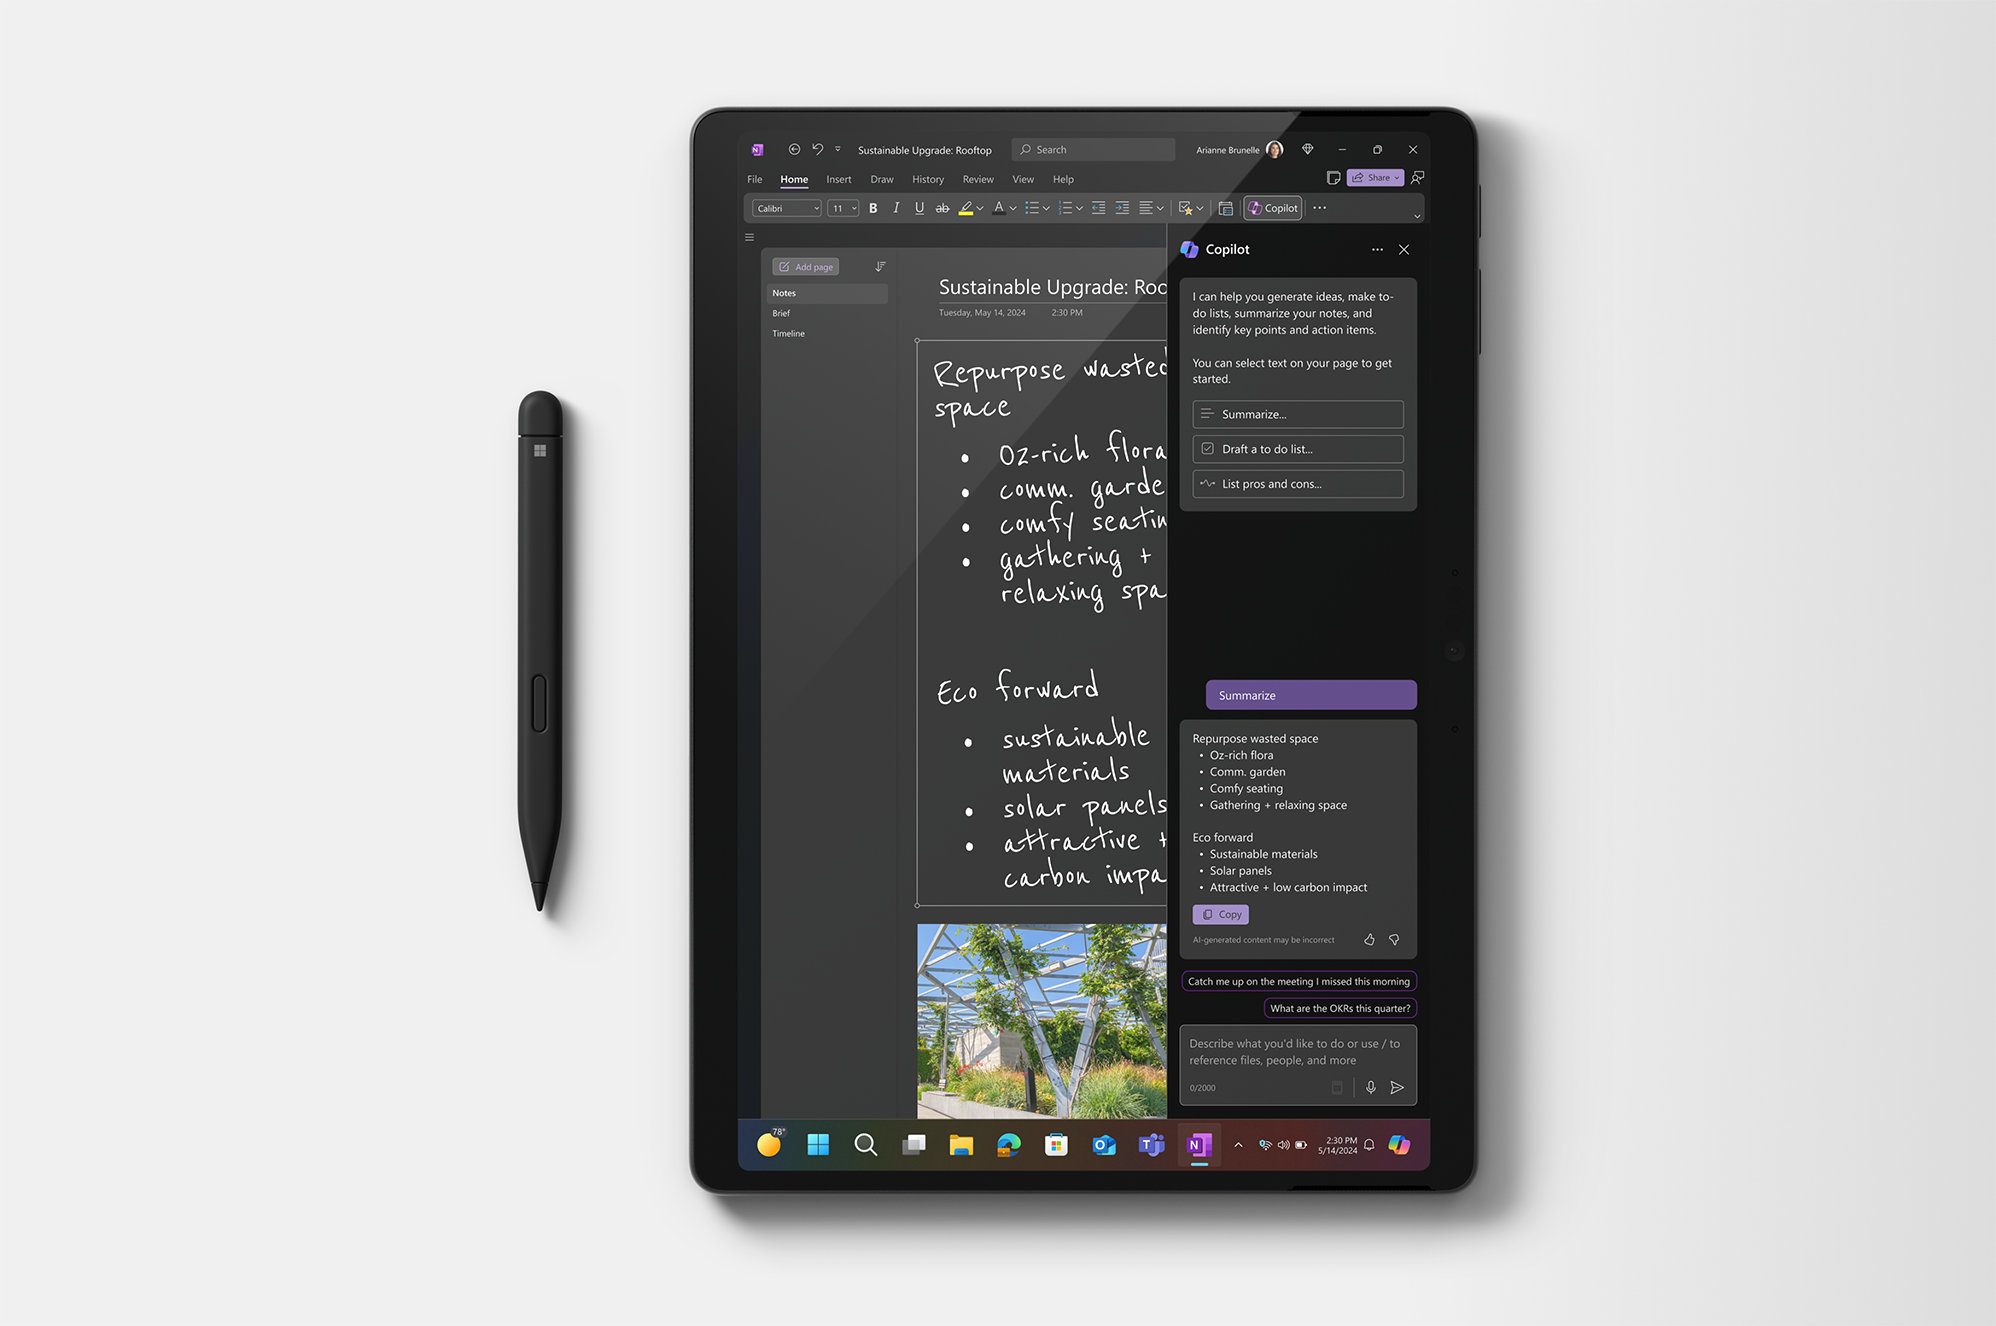 태블릿 모드 상태인 Surface Pro를 보여 주는 이미지. 이미지 왼쪽에는 Surface 슬림 펜이 있습니다.